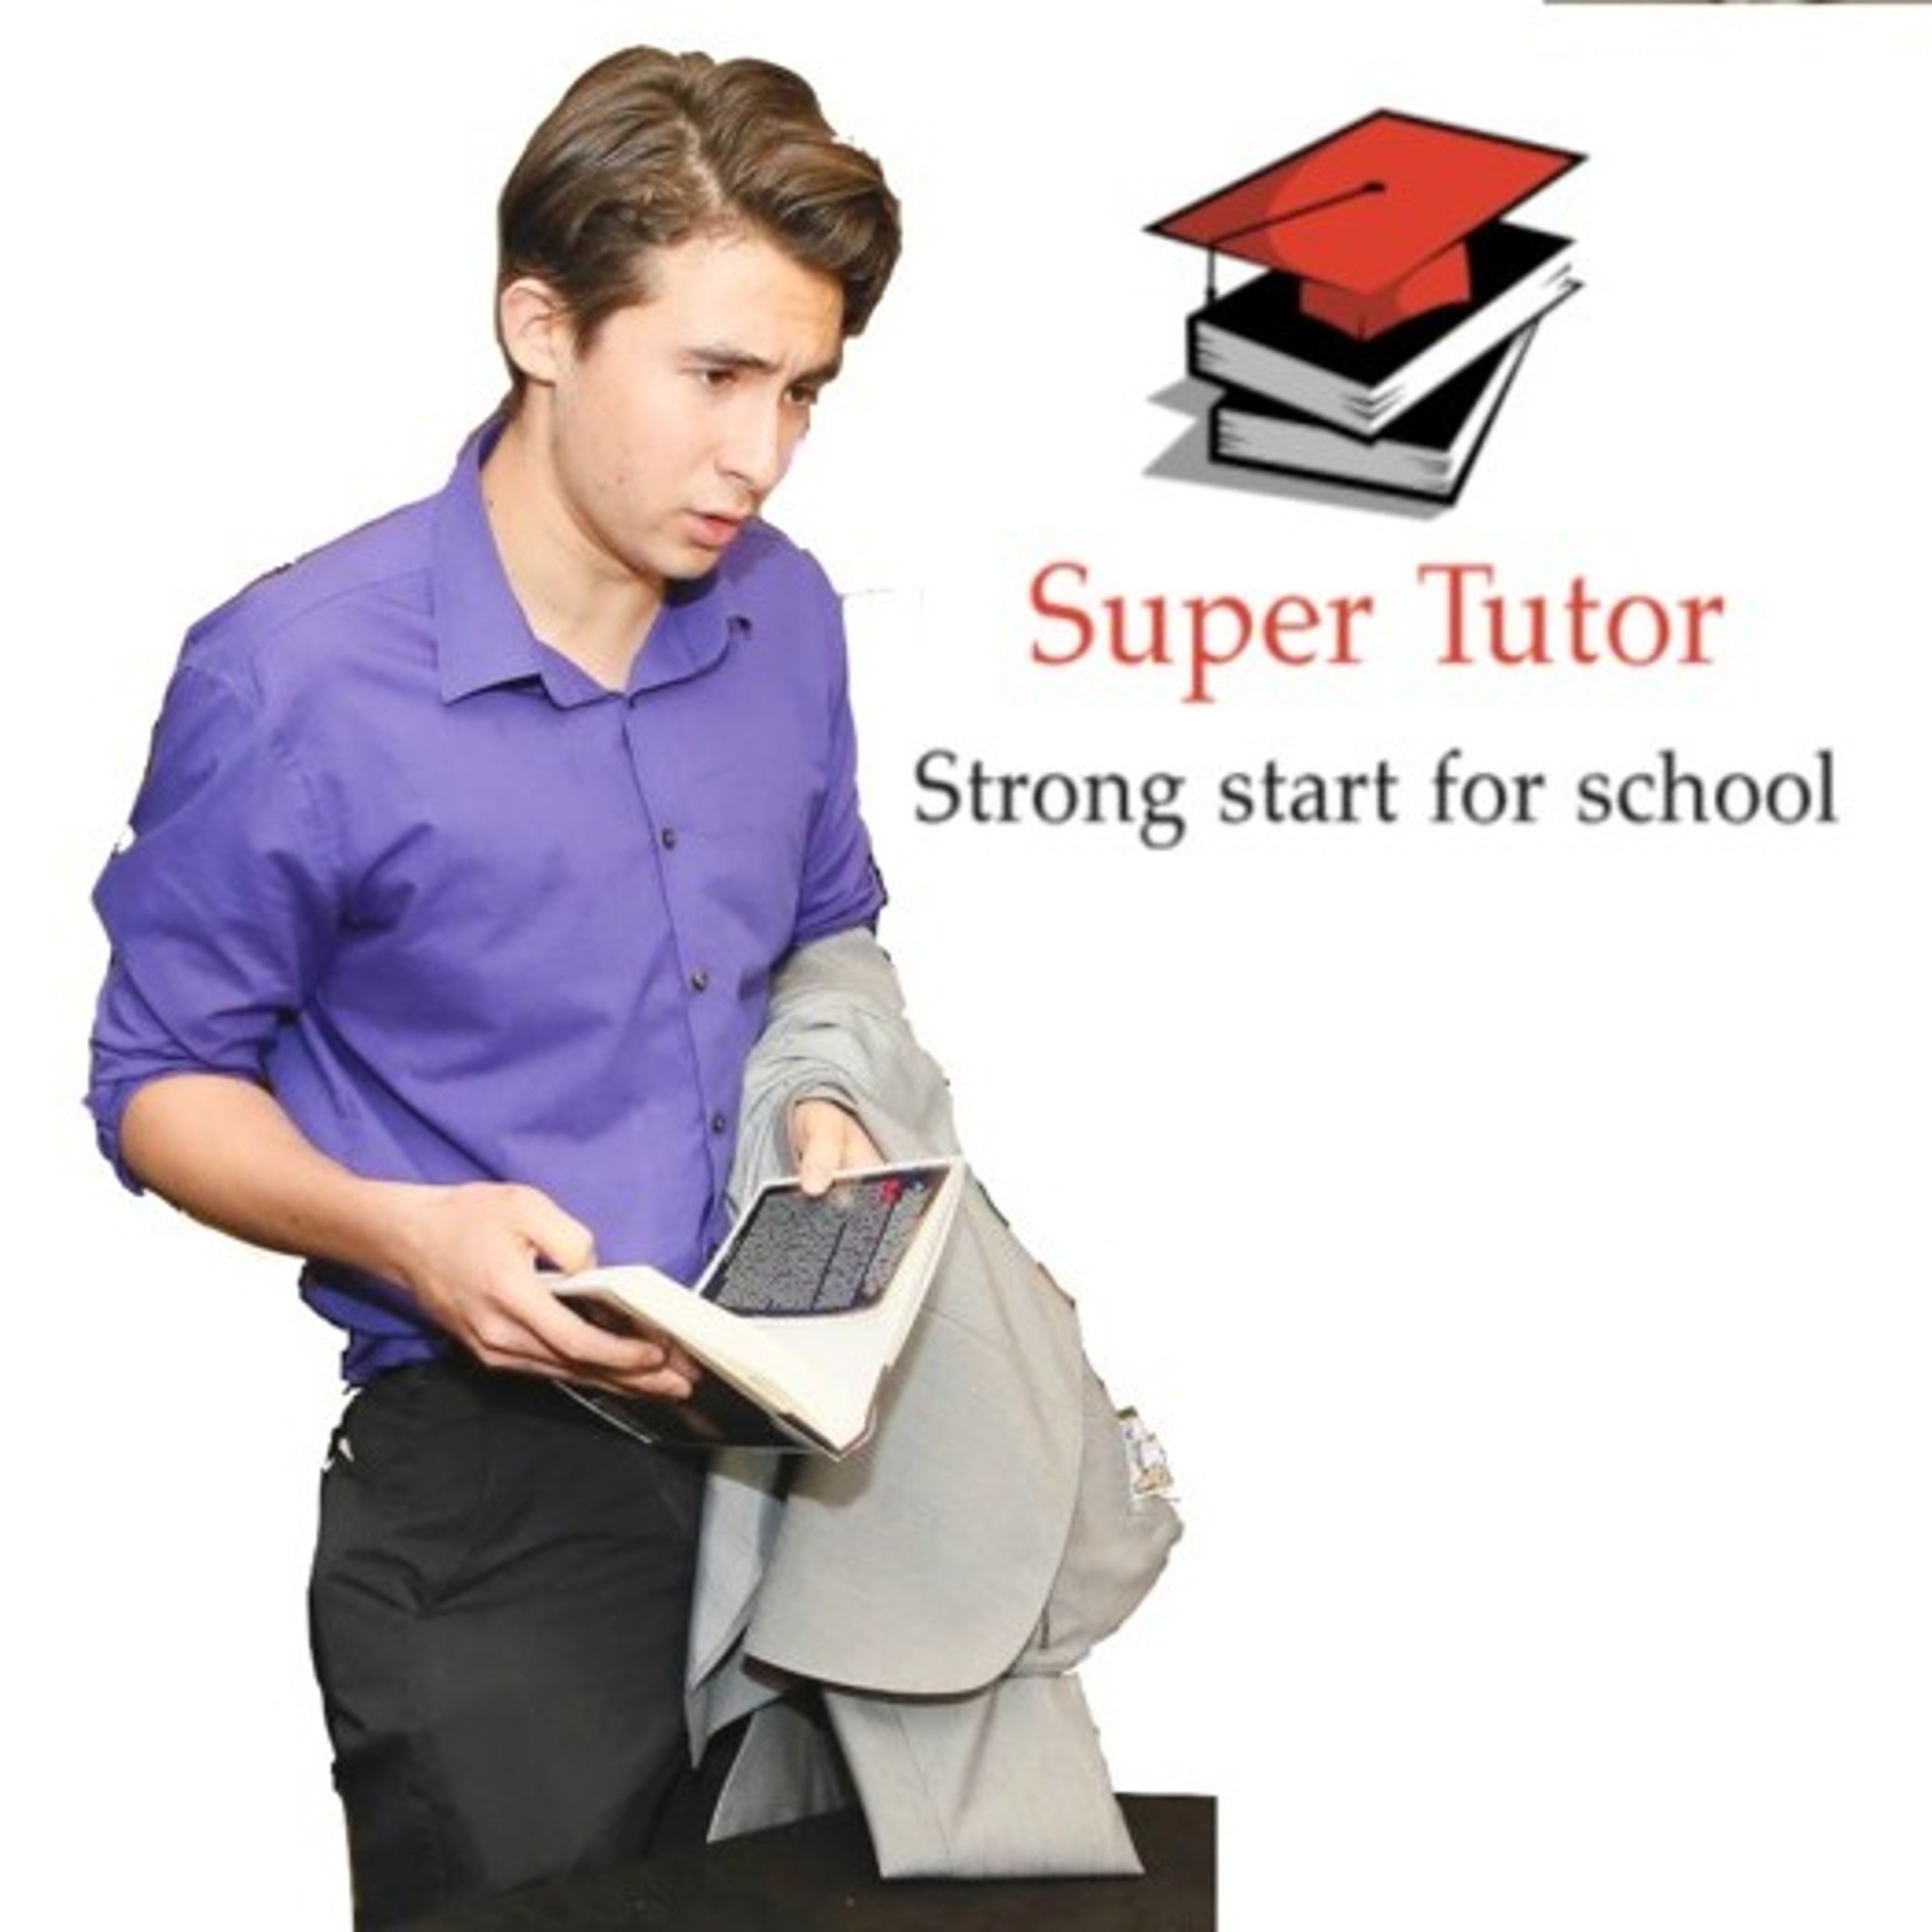 Super tutor providing strong start for school